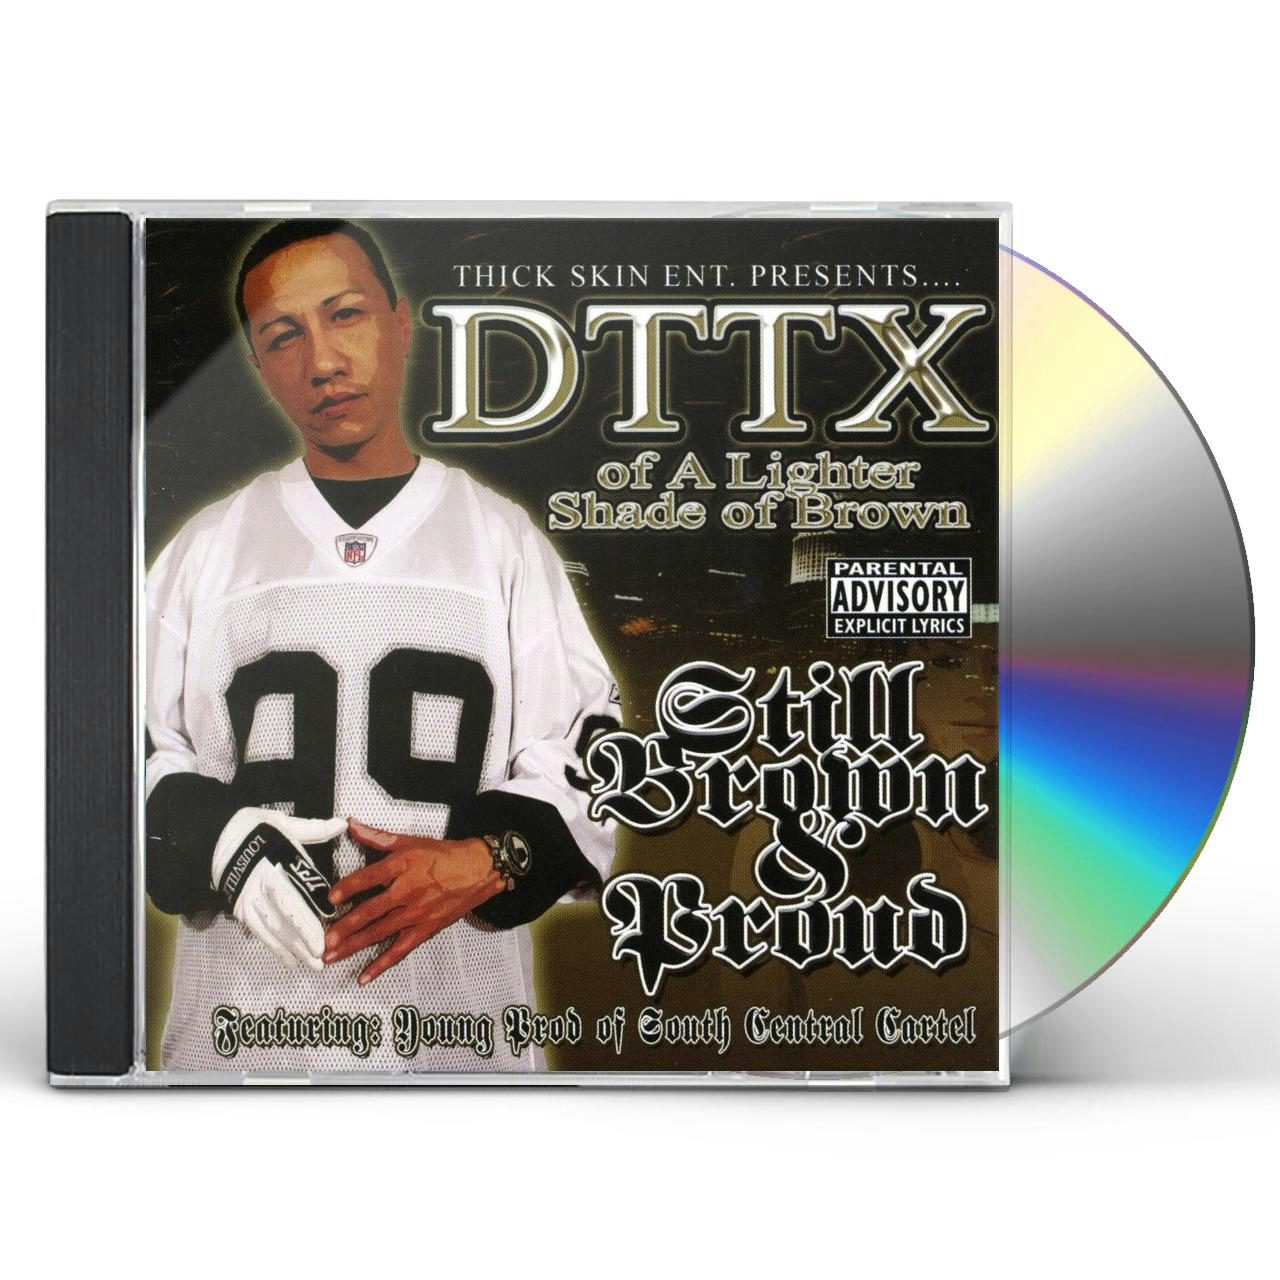 DTTX STILL BROWN & PROUD CD